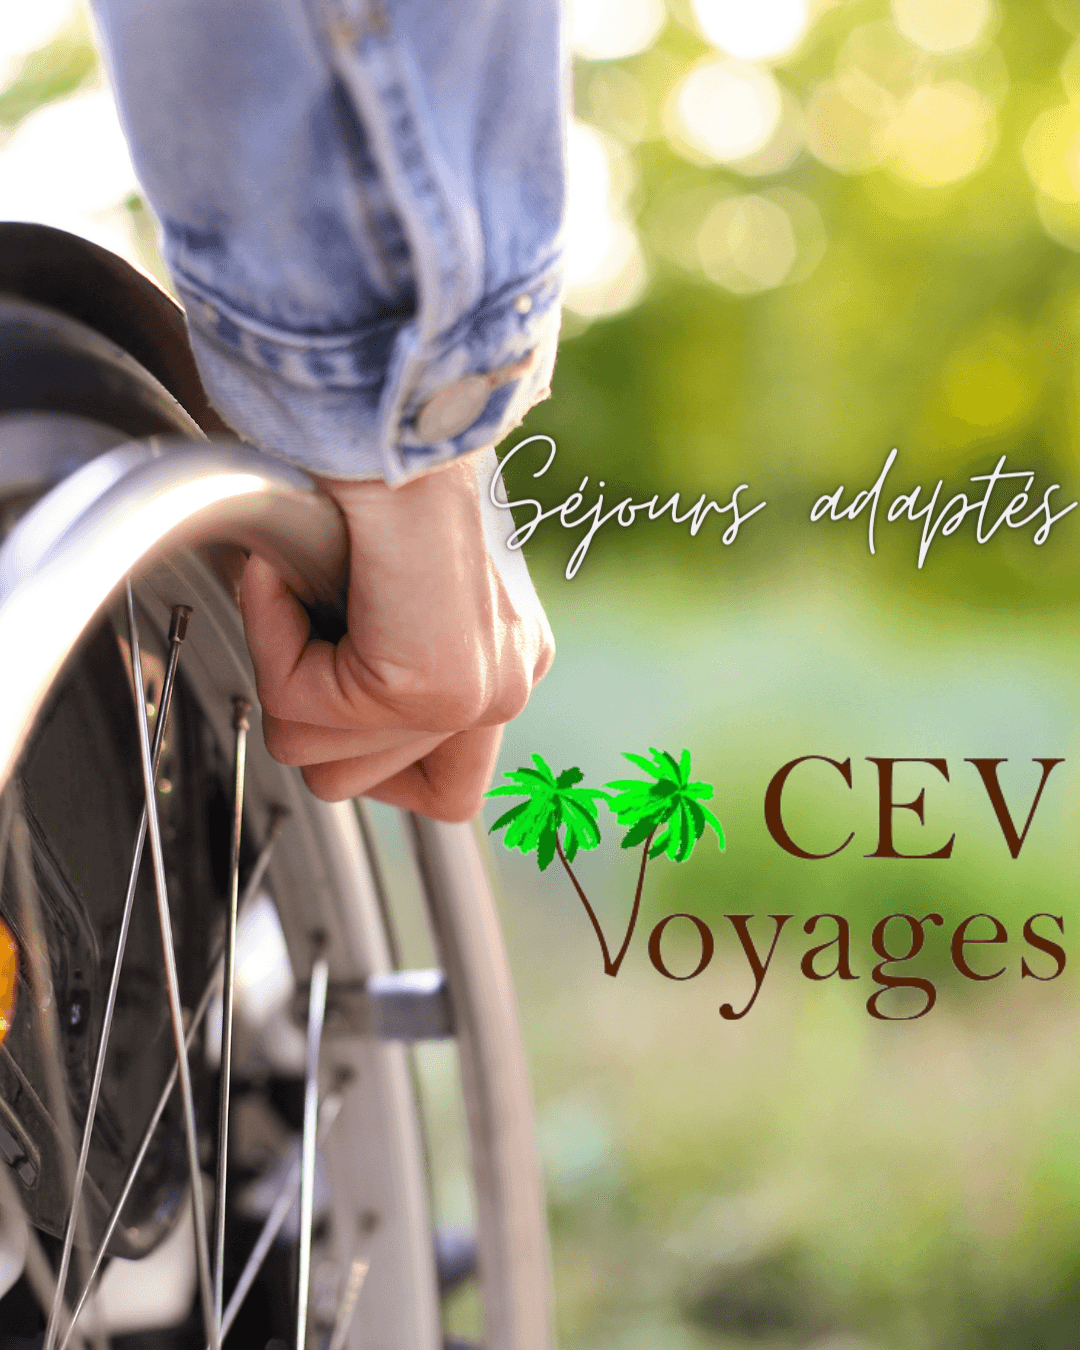 Copie De Cev Voyages Adaptã©s (1)